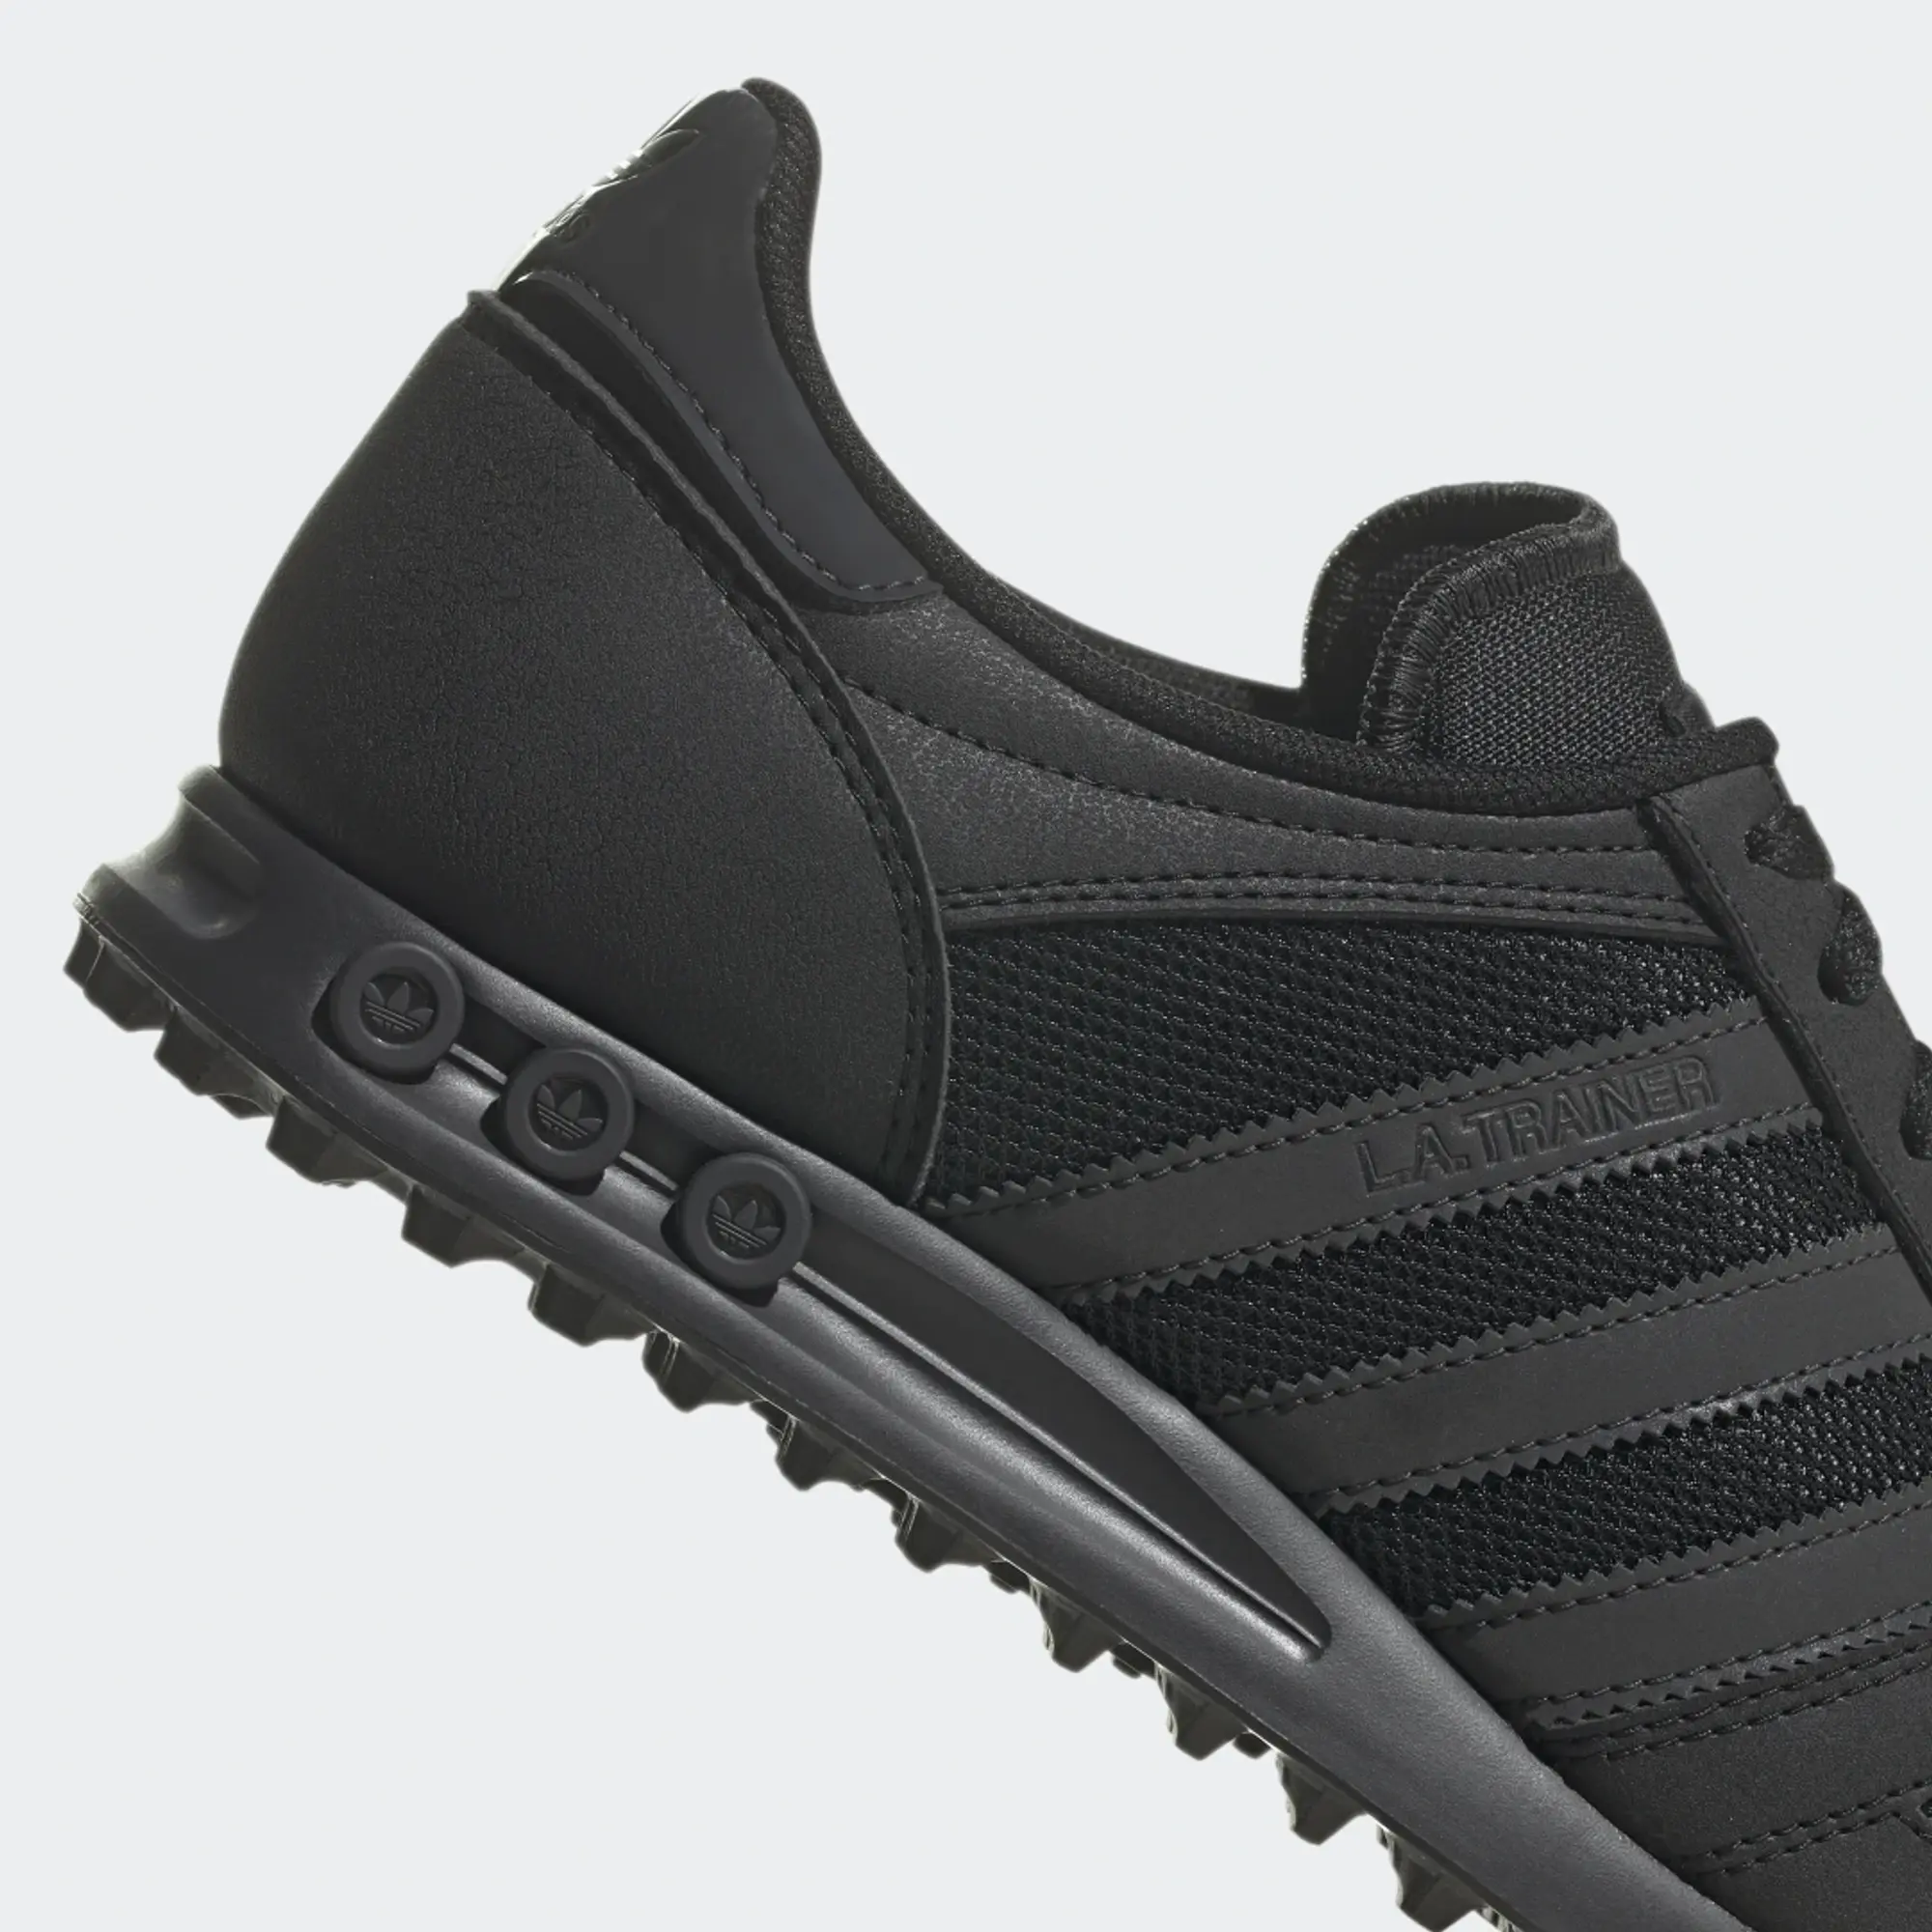 LA Trainer Shoes - Core Black / Carbon / Core Black | B23707 | FOOTY.COM